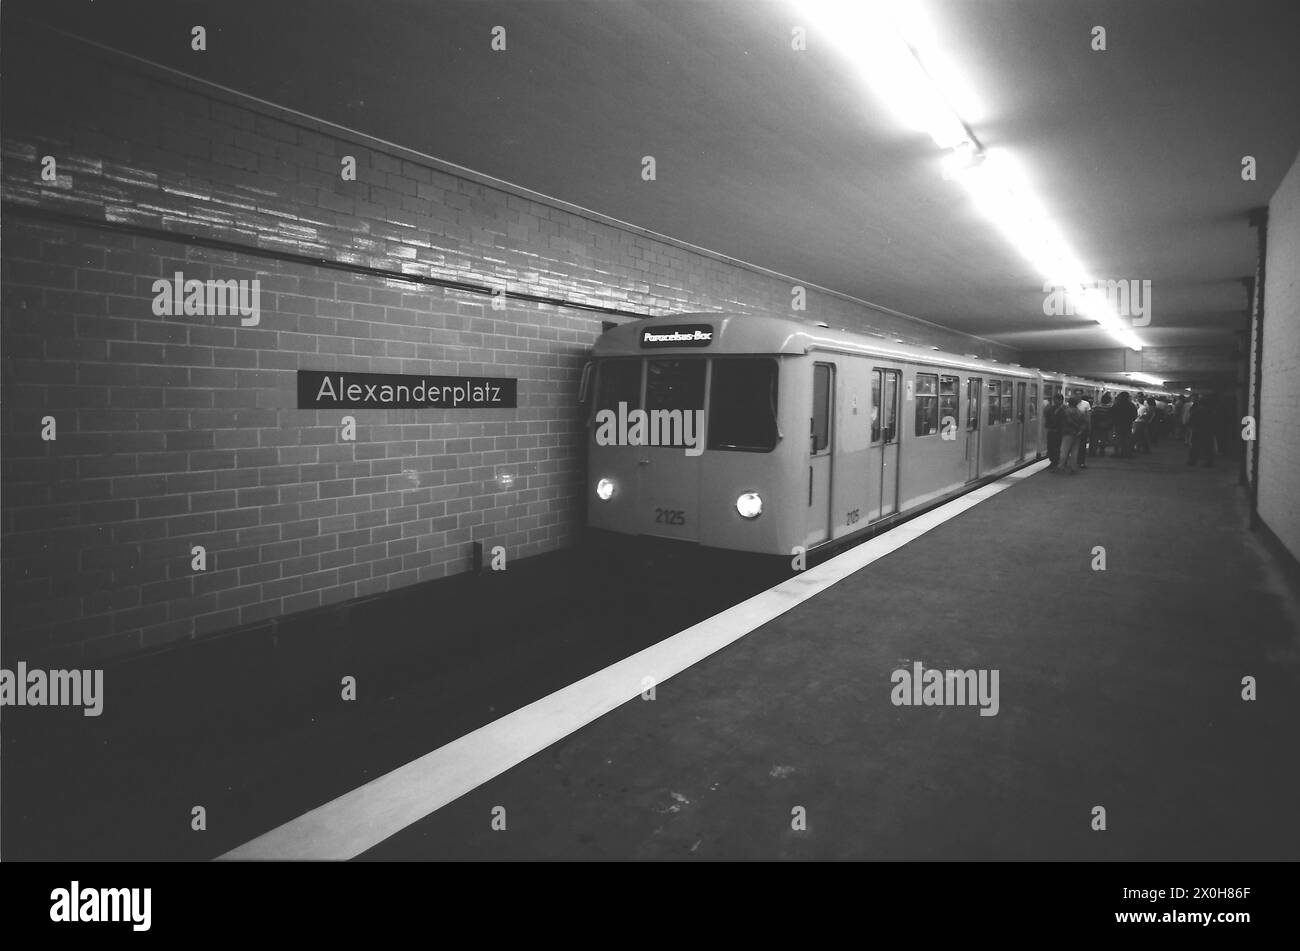 Dopo 29 anni di chiusura, le stazioni fantasma sono tornate online [traduzione automatizzata] Foto Stock